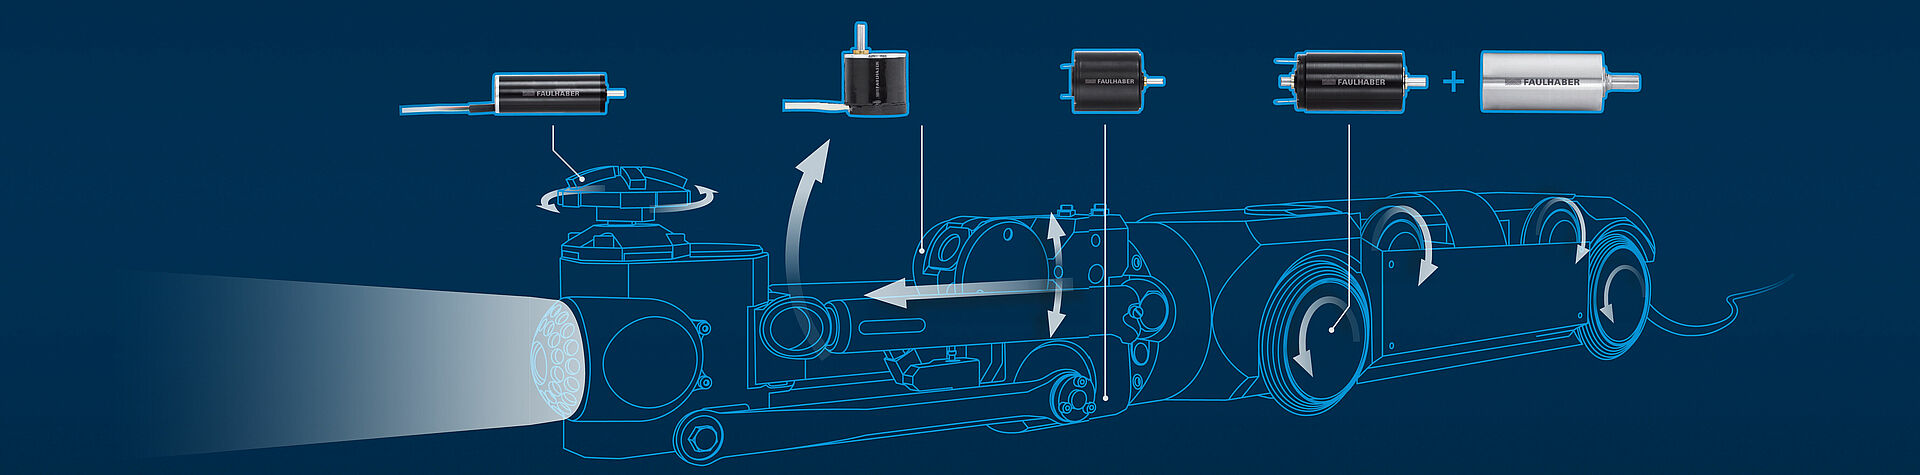 FAULHABER 的直流電機用於相機控制、工具功能和車輪驅動